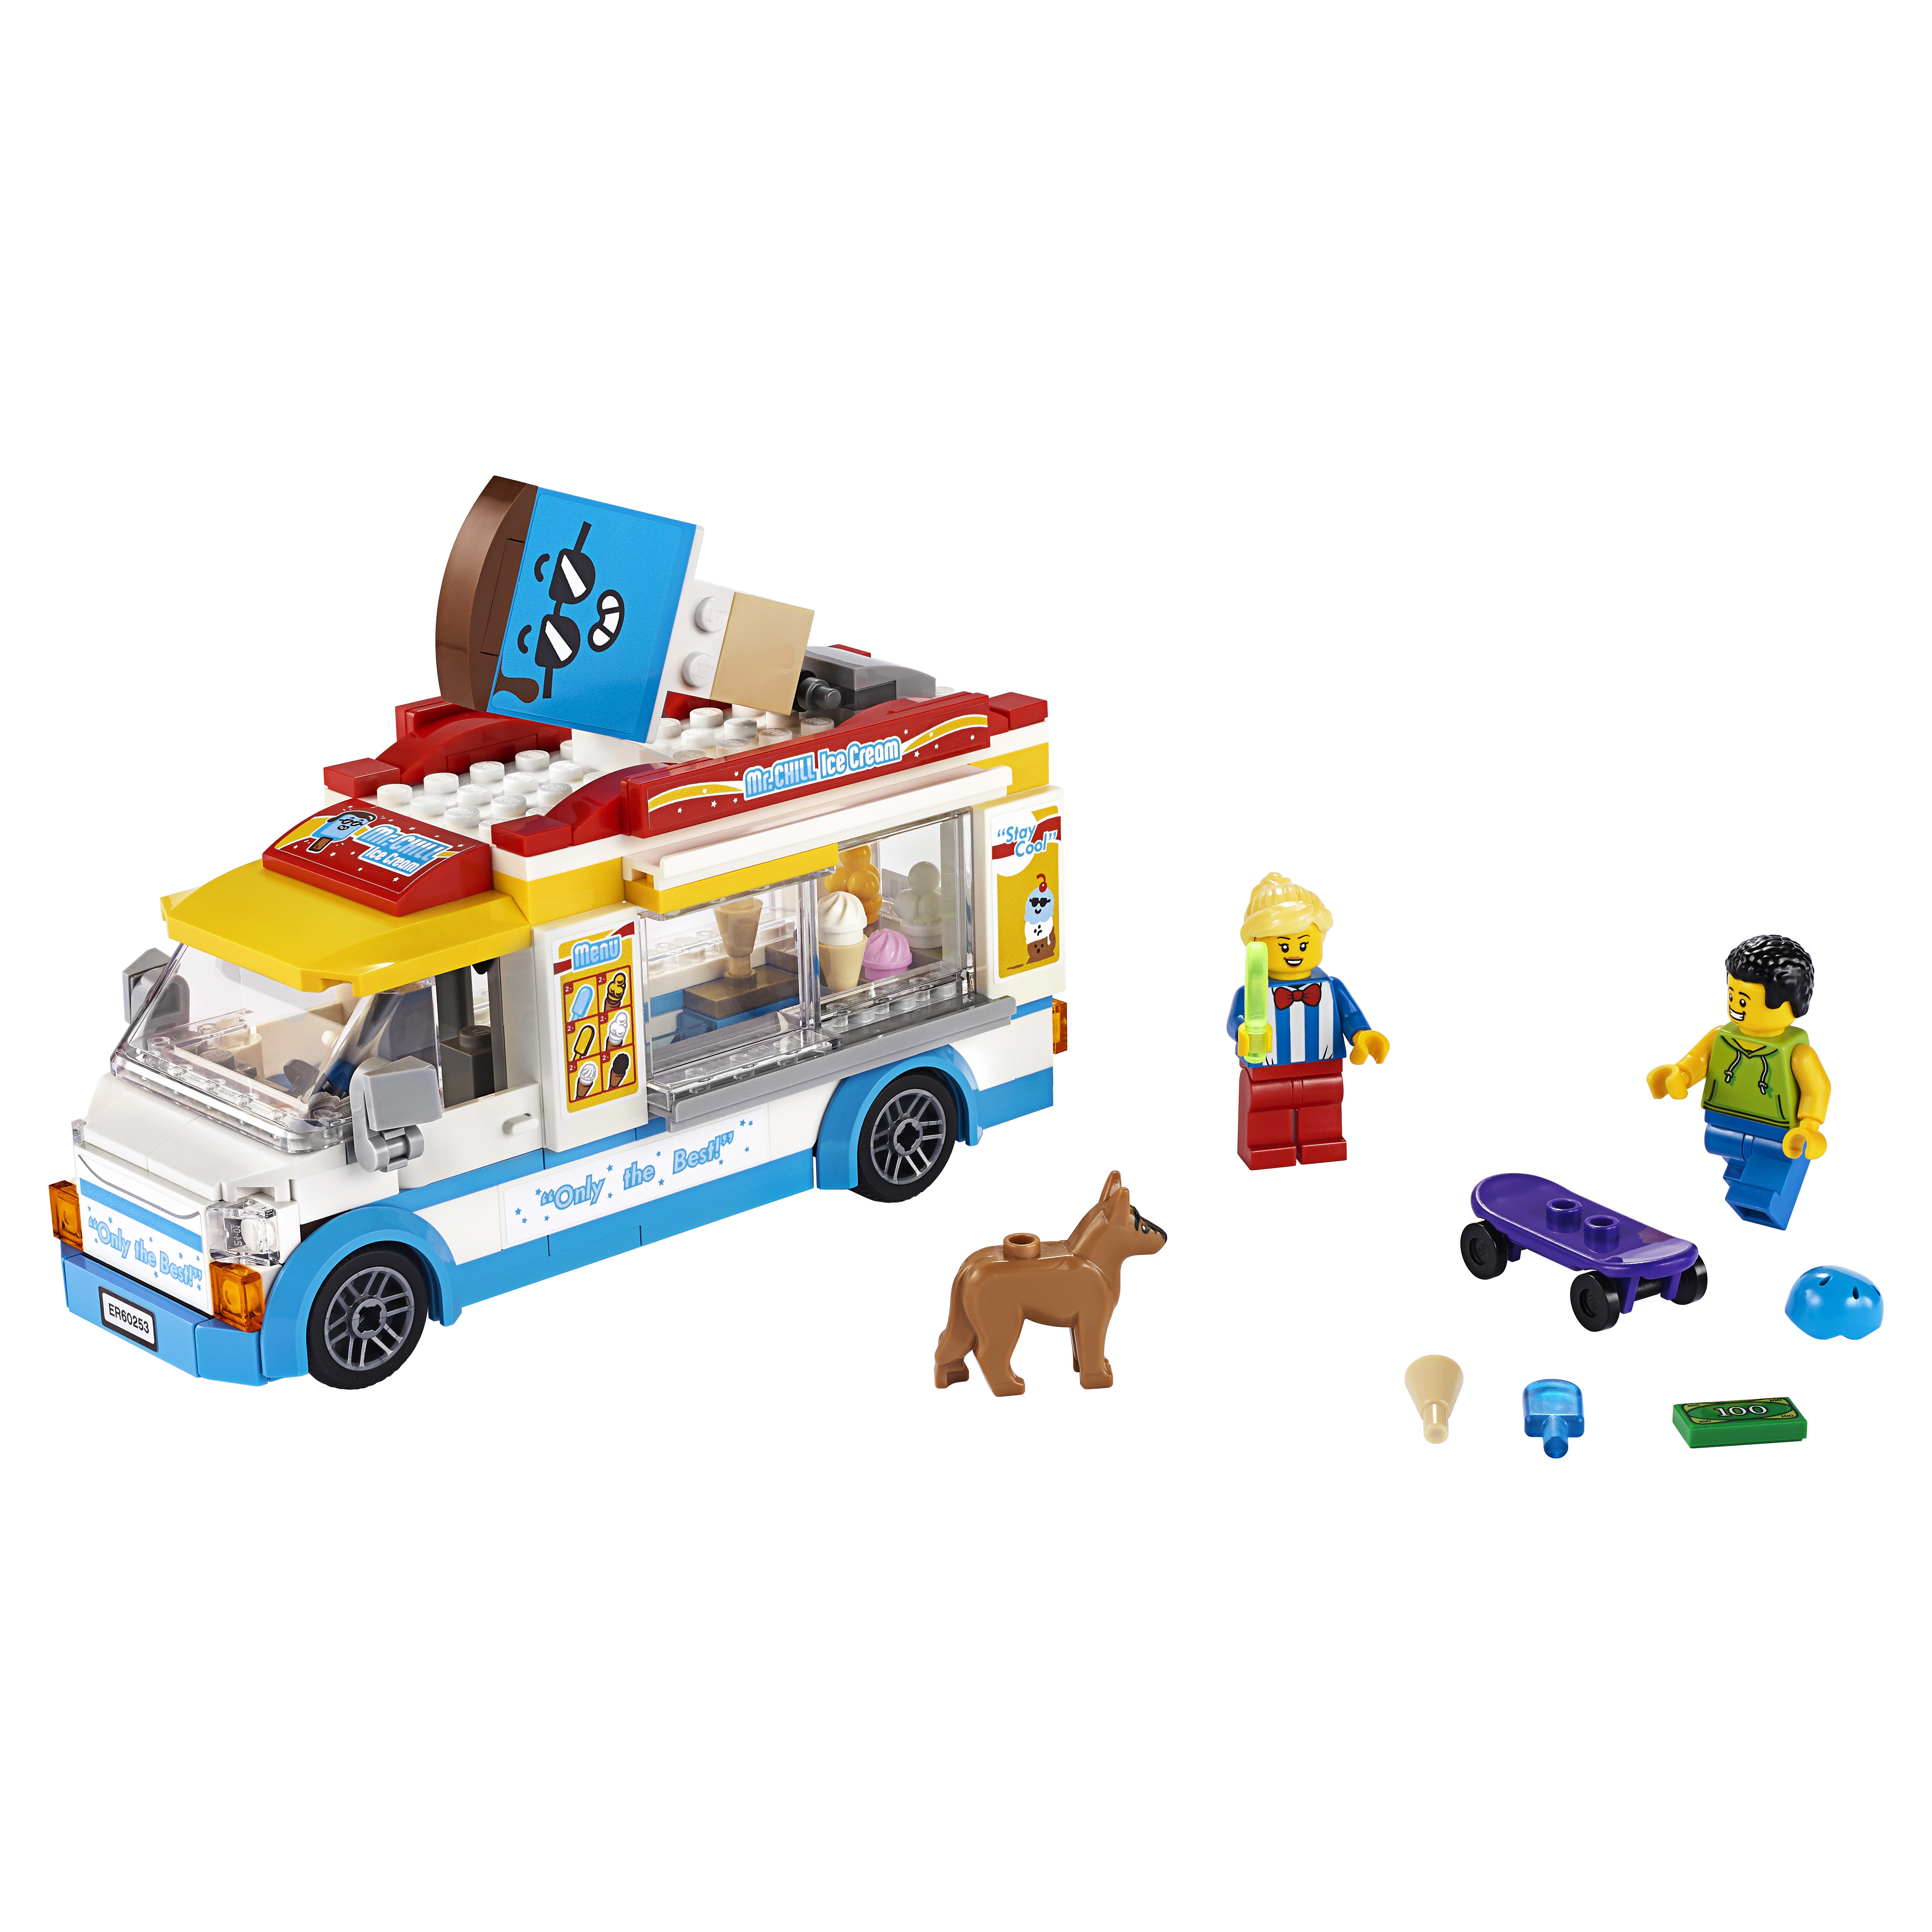 Конструктор LEGO City Great Vehicles 60253 Грузовик мороженщика конструктор lego city arctic expedition грузовик ледовой разведки 60194